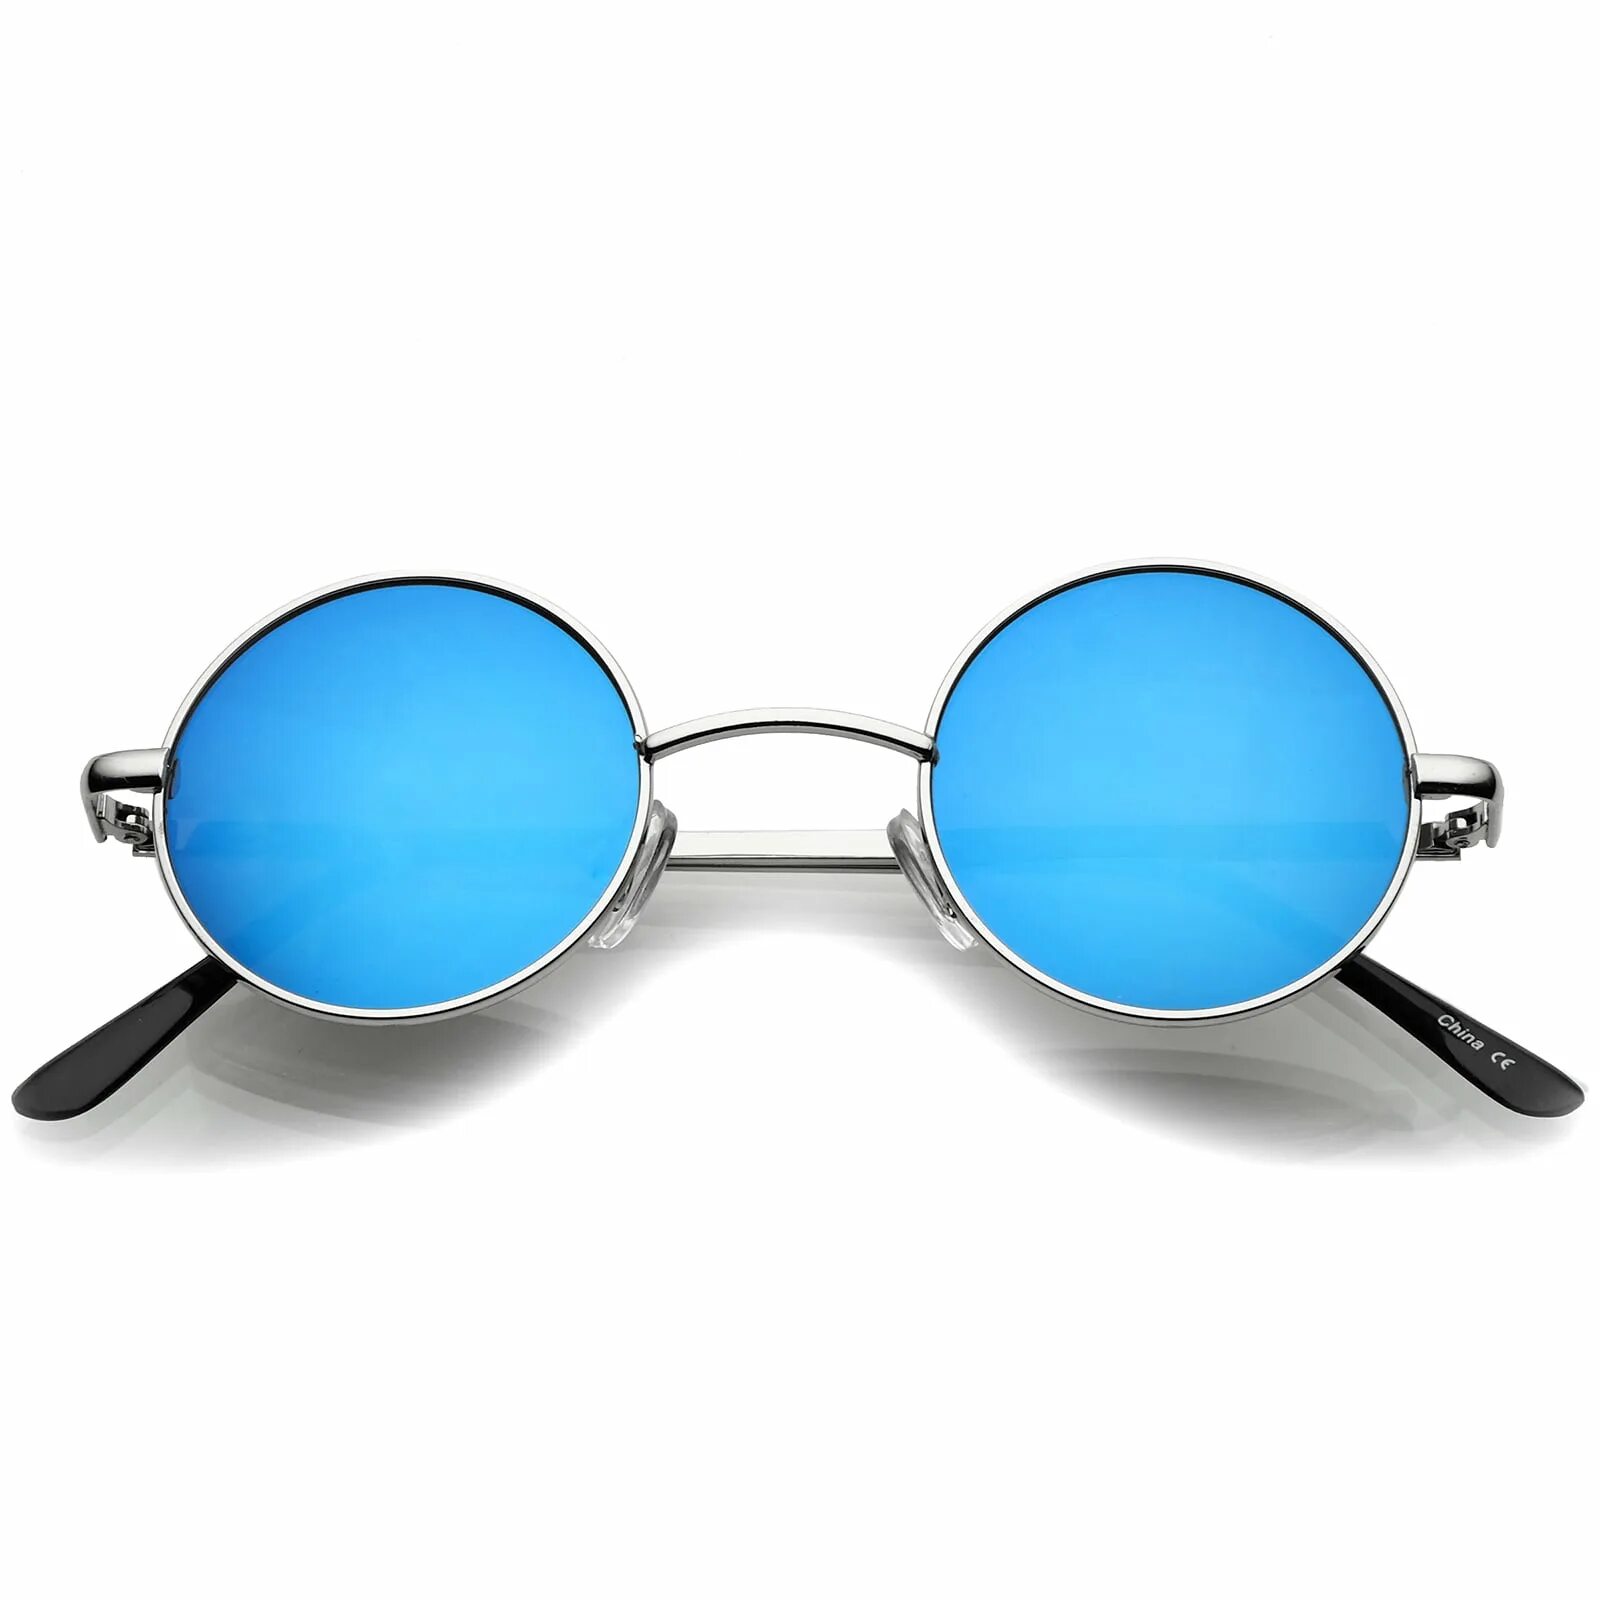 Купить синие очки. Тишейды Базилио. Очки солнцезащитные 7275 Blue. Очки круг квадрат s1198 uf400. Круглые очки.